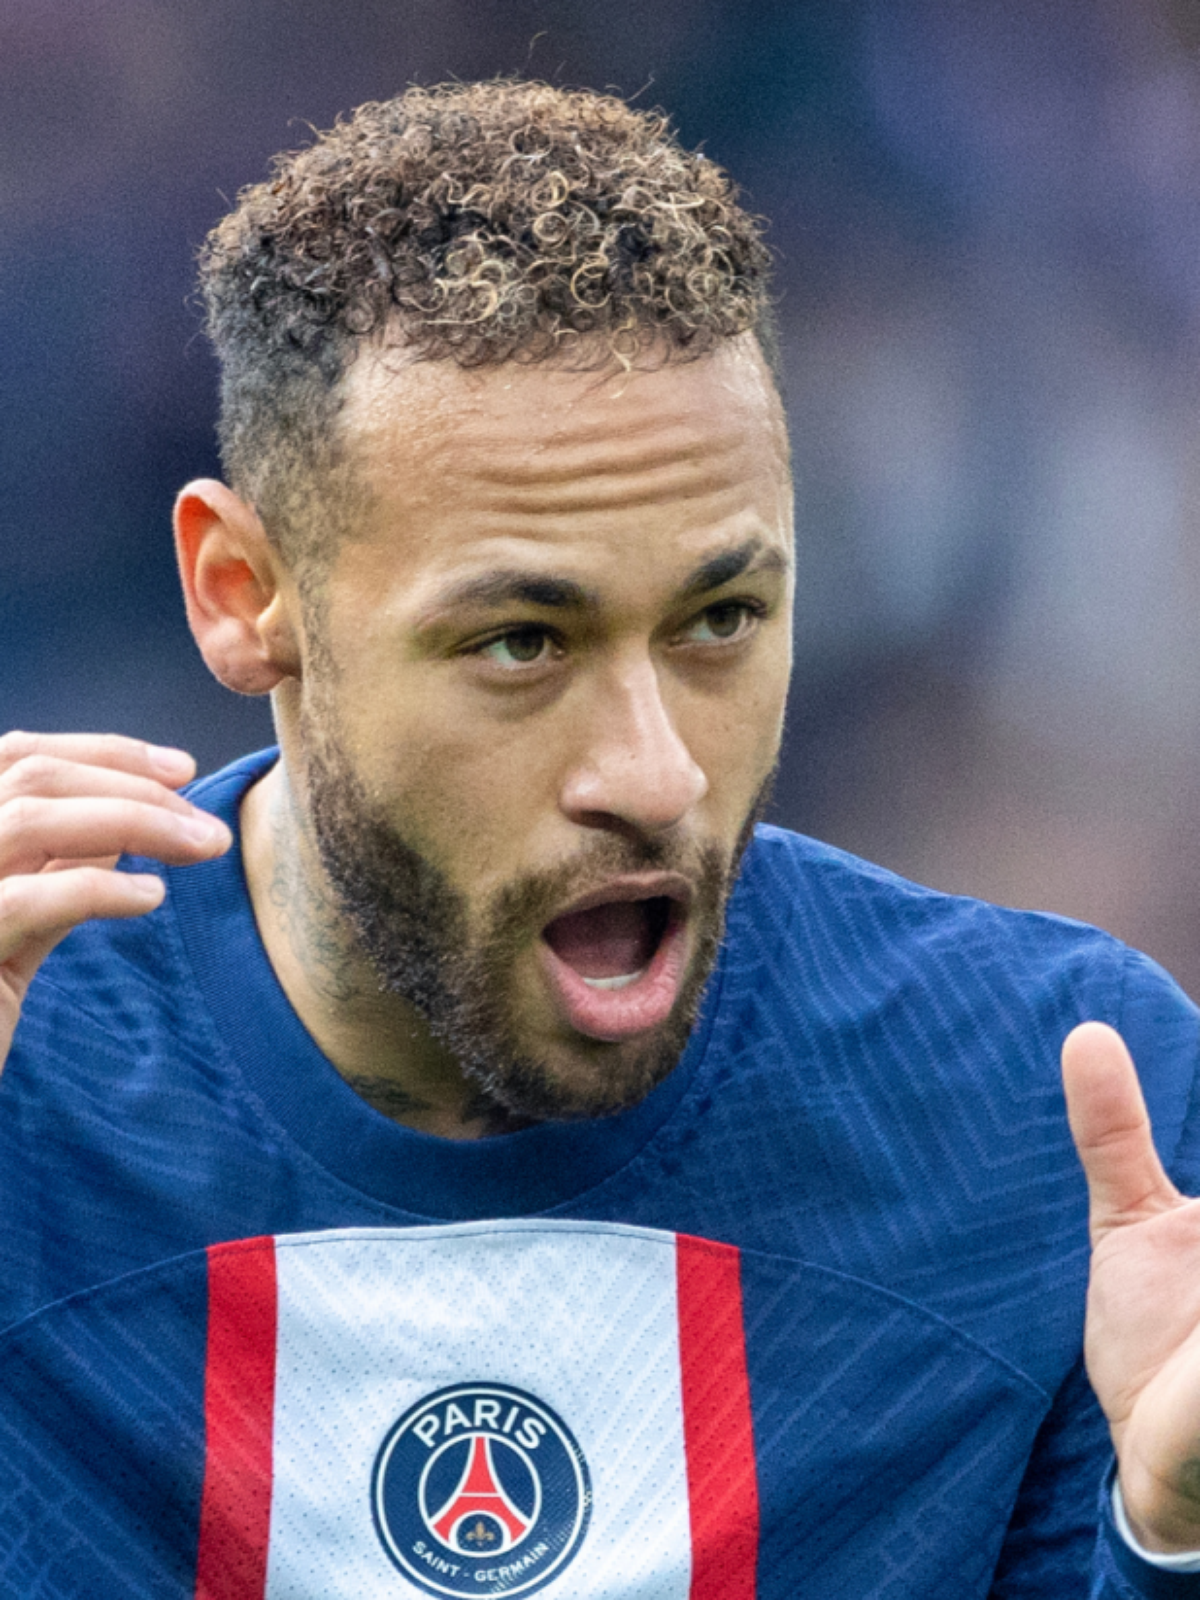 5 minutos de sexo web ironiza tempo de duração da suposta traição de Neymar foto